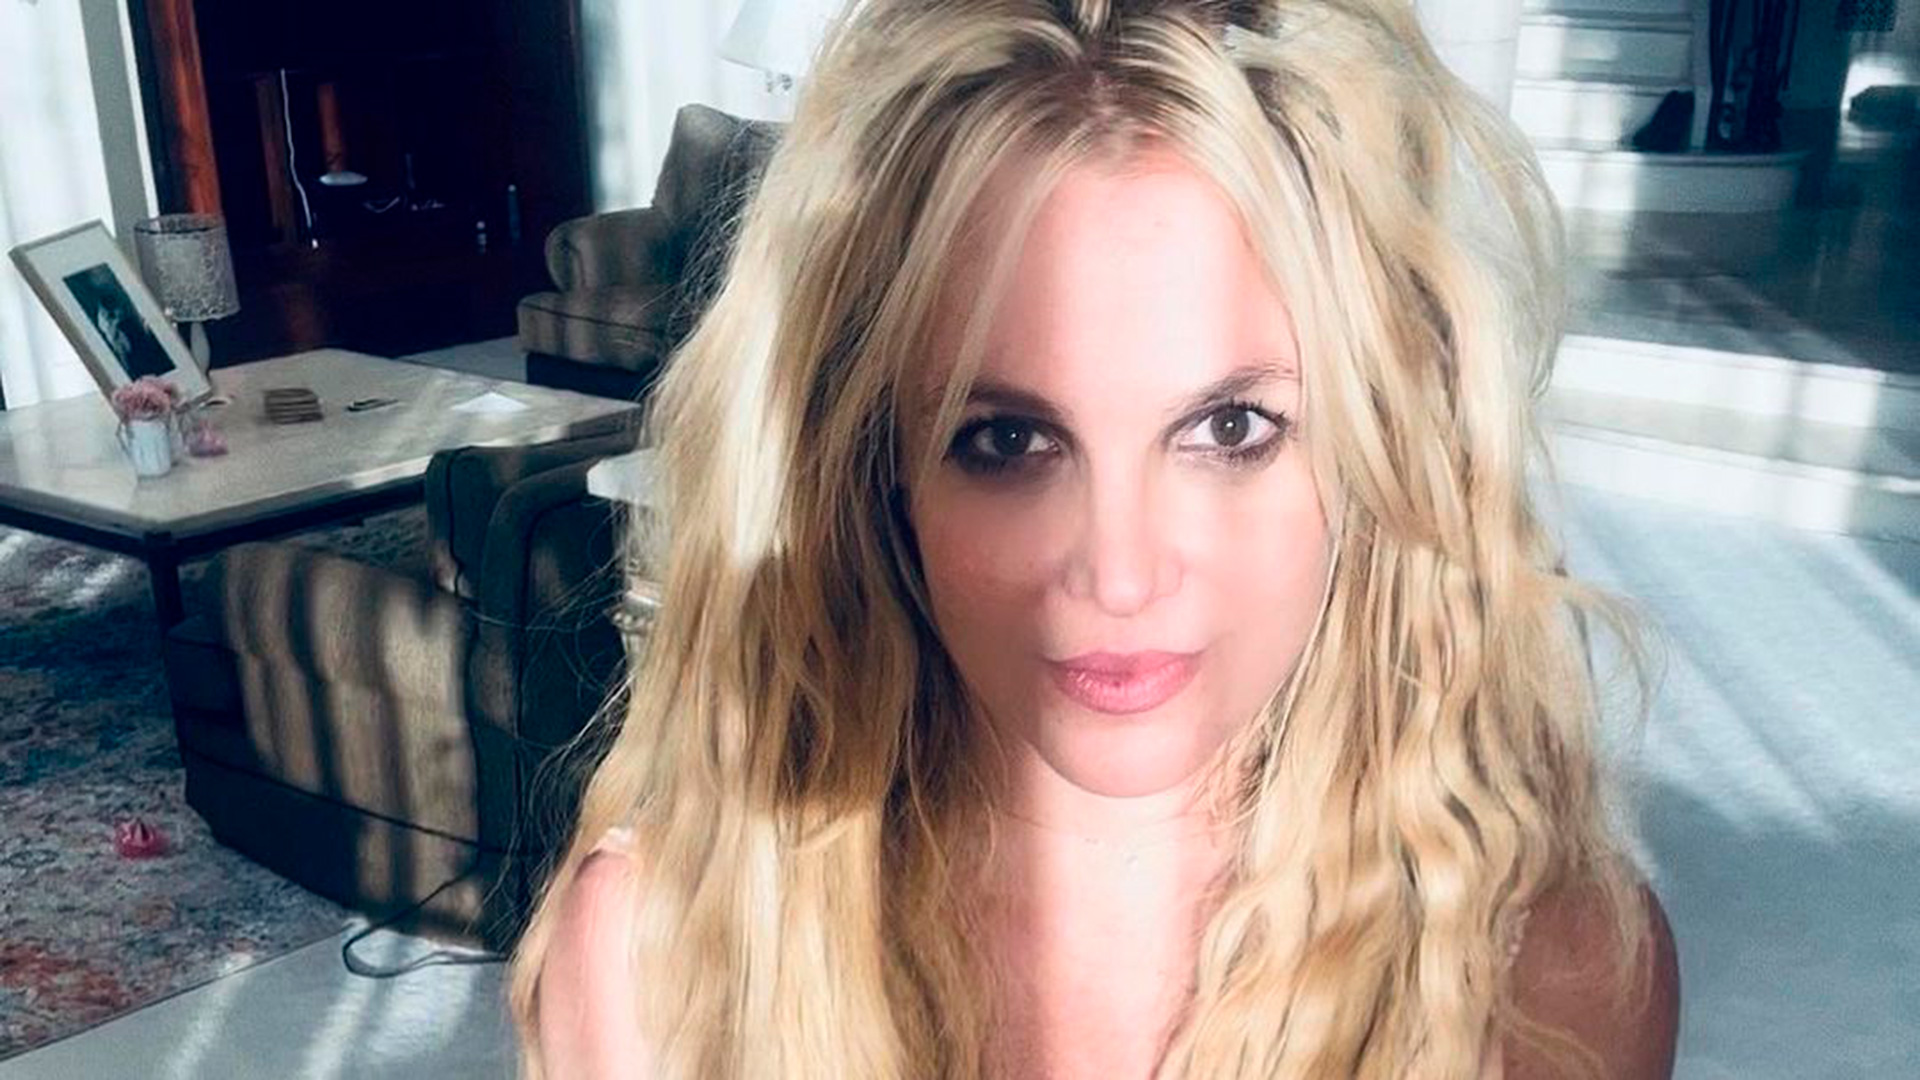 La policía fue a la mansión de Britney Spears para saber si estaba en peligro tras varios llamados de sus fanáticos